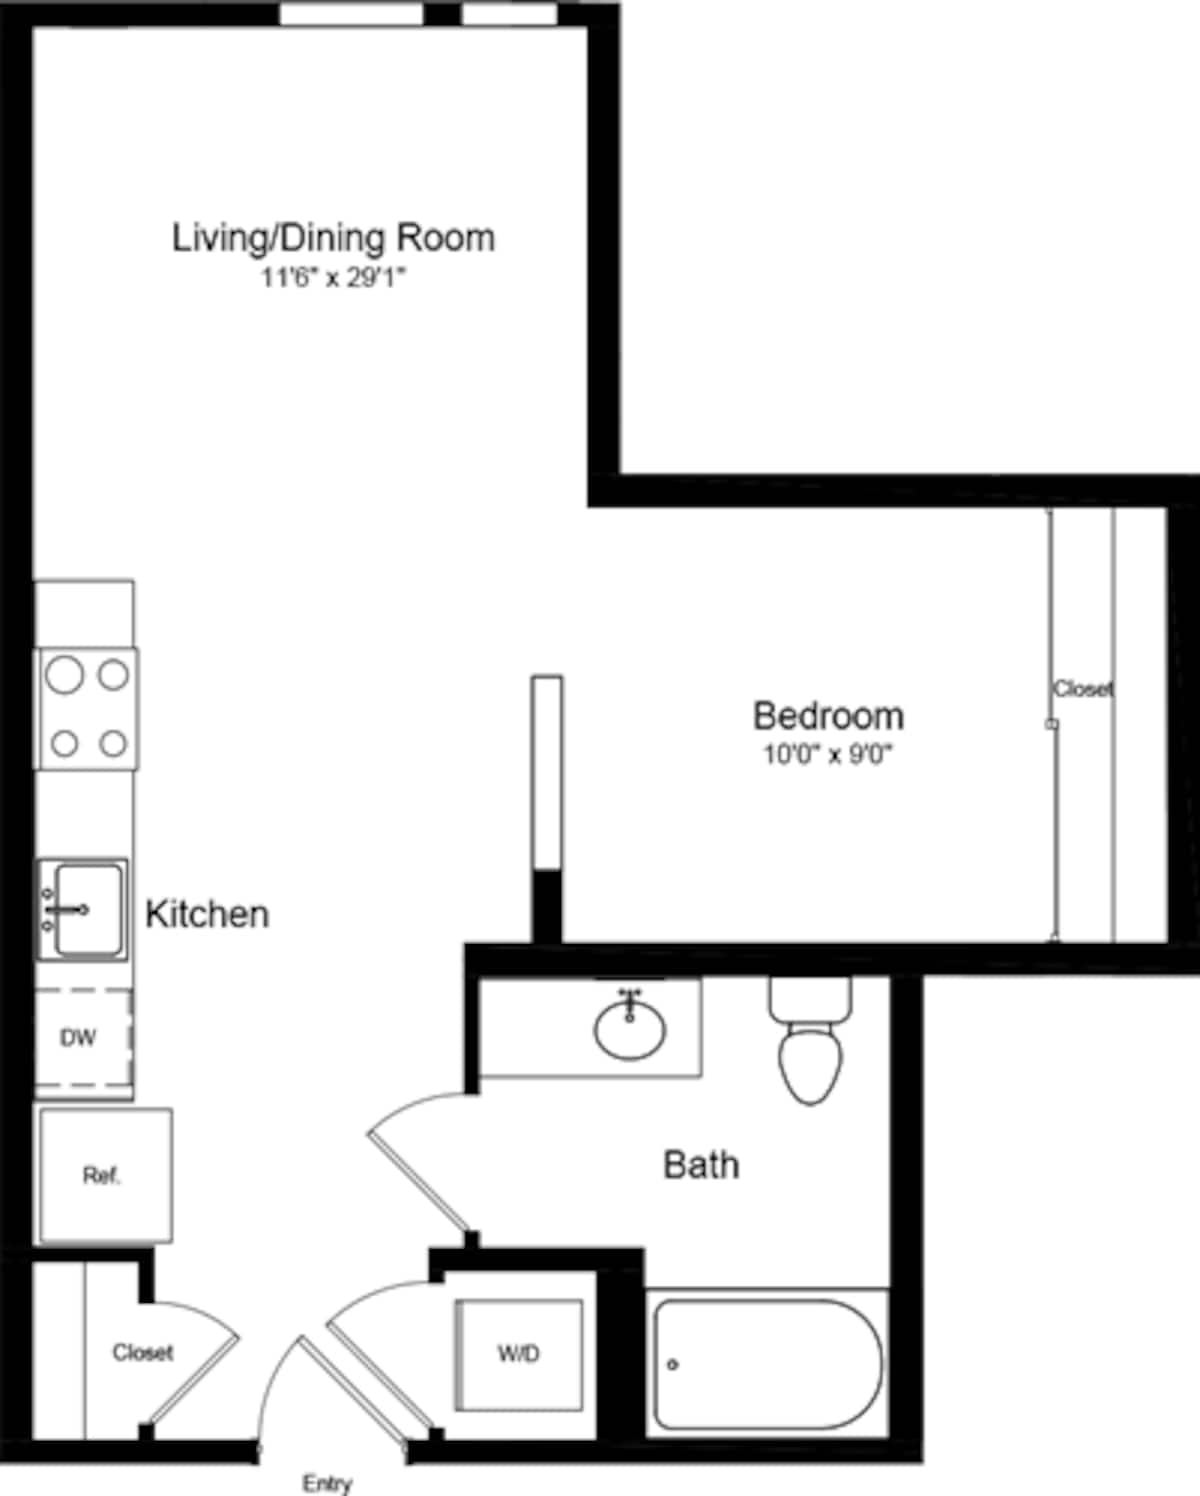 Floorplan diagram for Junior 1 Bedroom, showing 1 bedroom